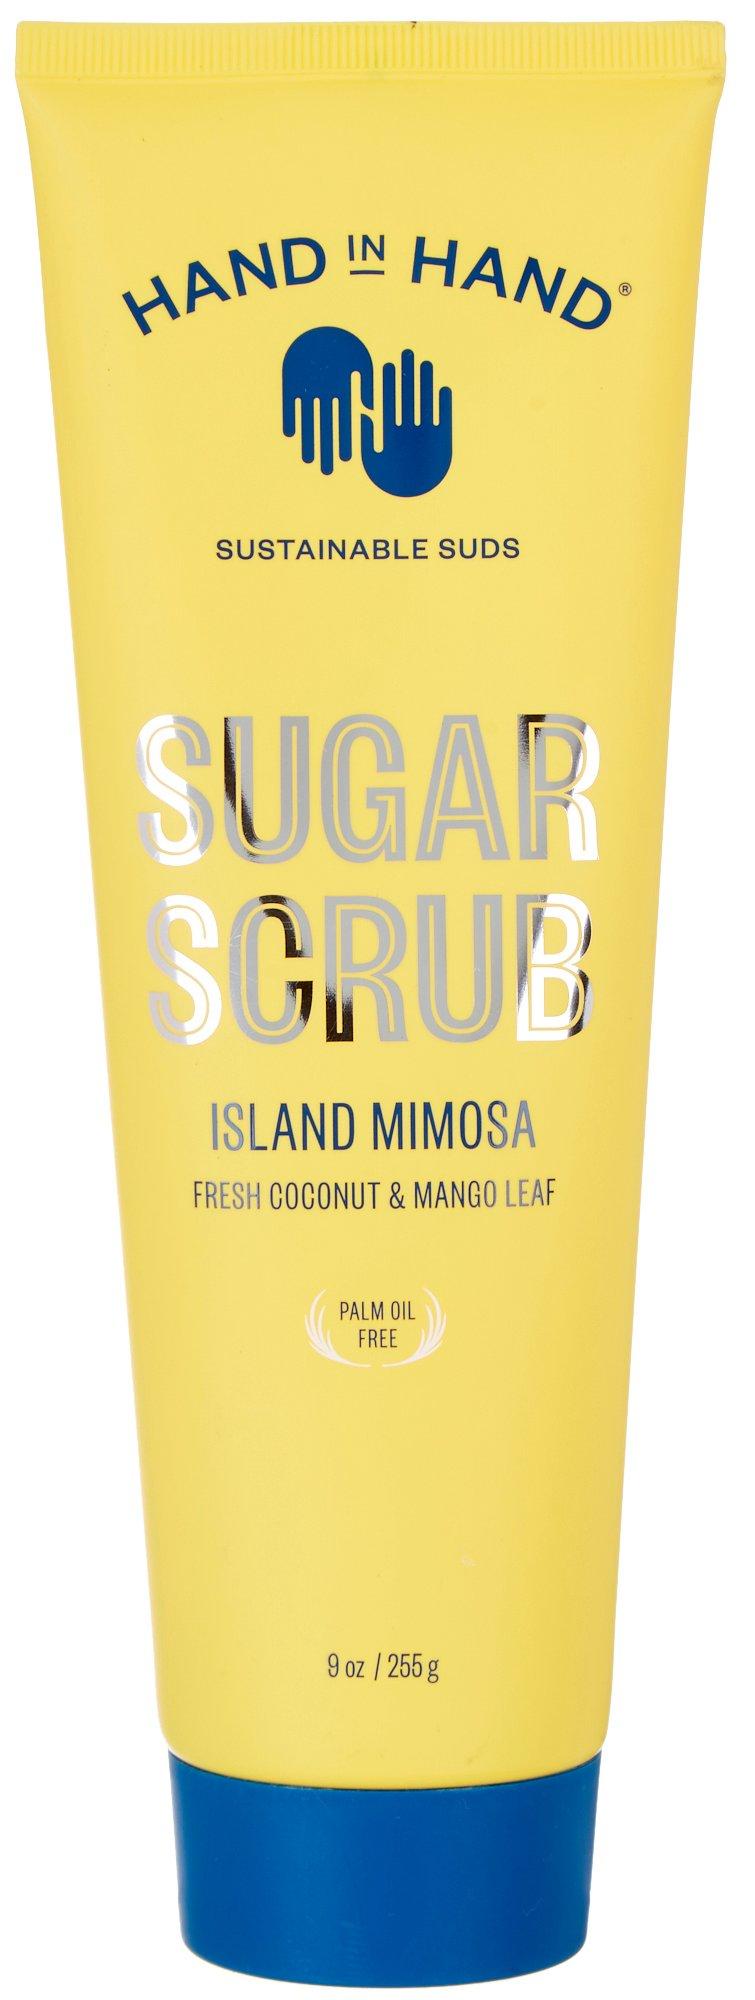 Hand In Hand Island Mimosa Sugar Scrub 9 Oz.